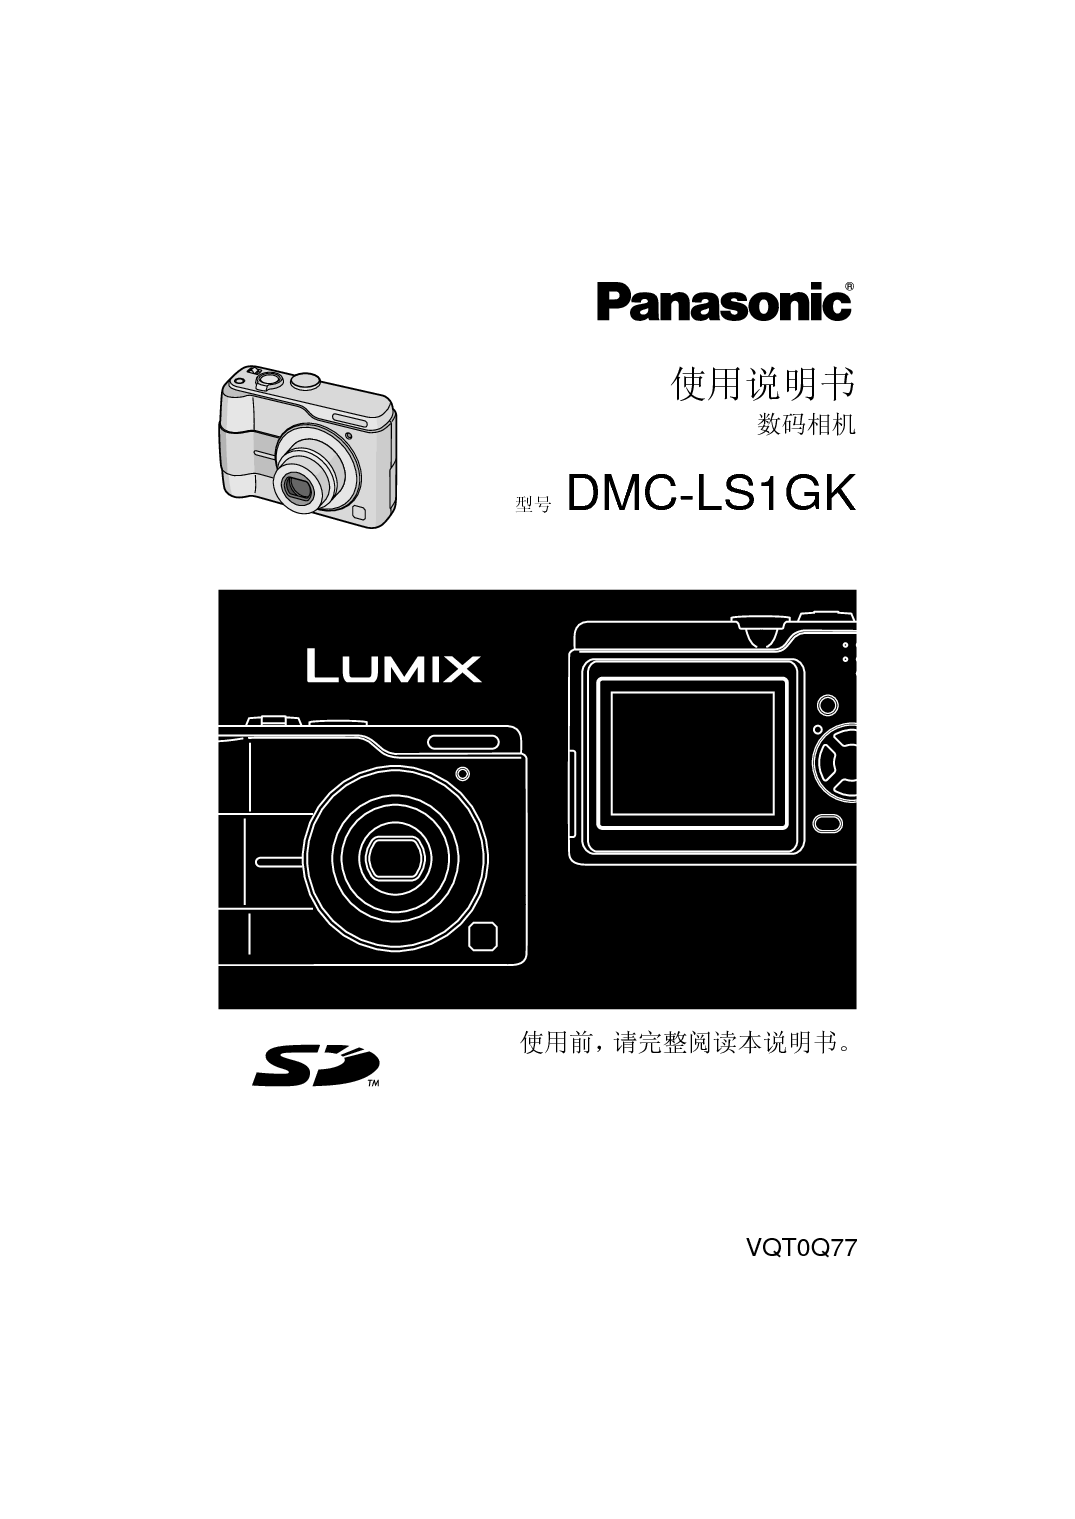 松下 Panasonic DMC-LS1GK 说明书 封面